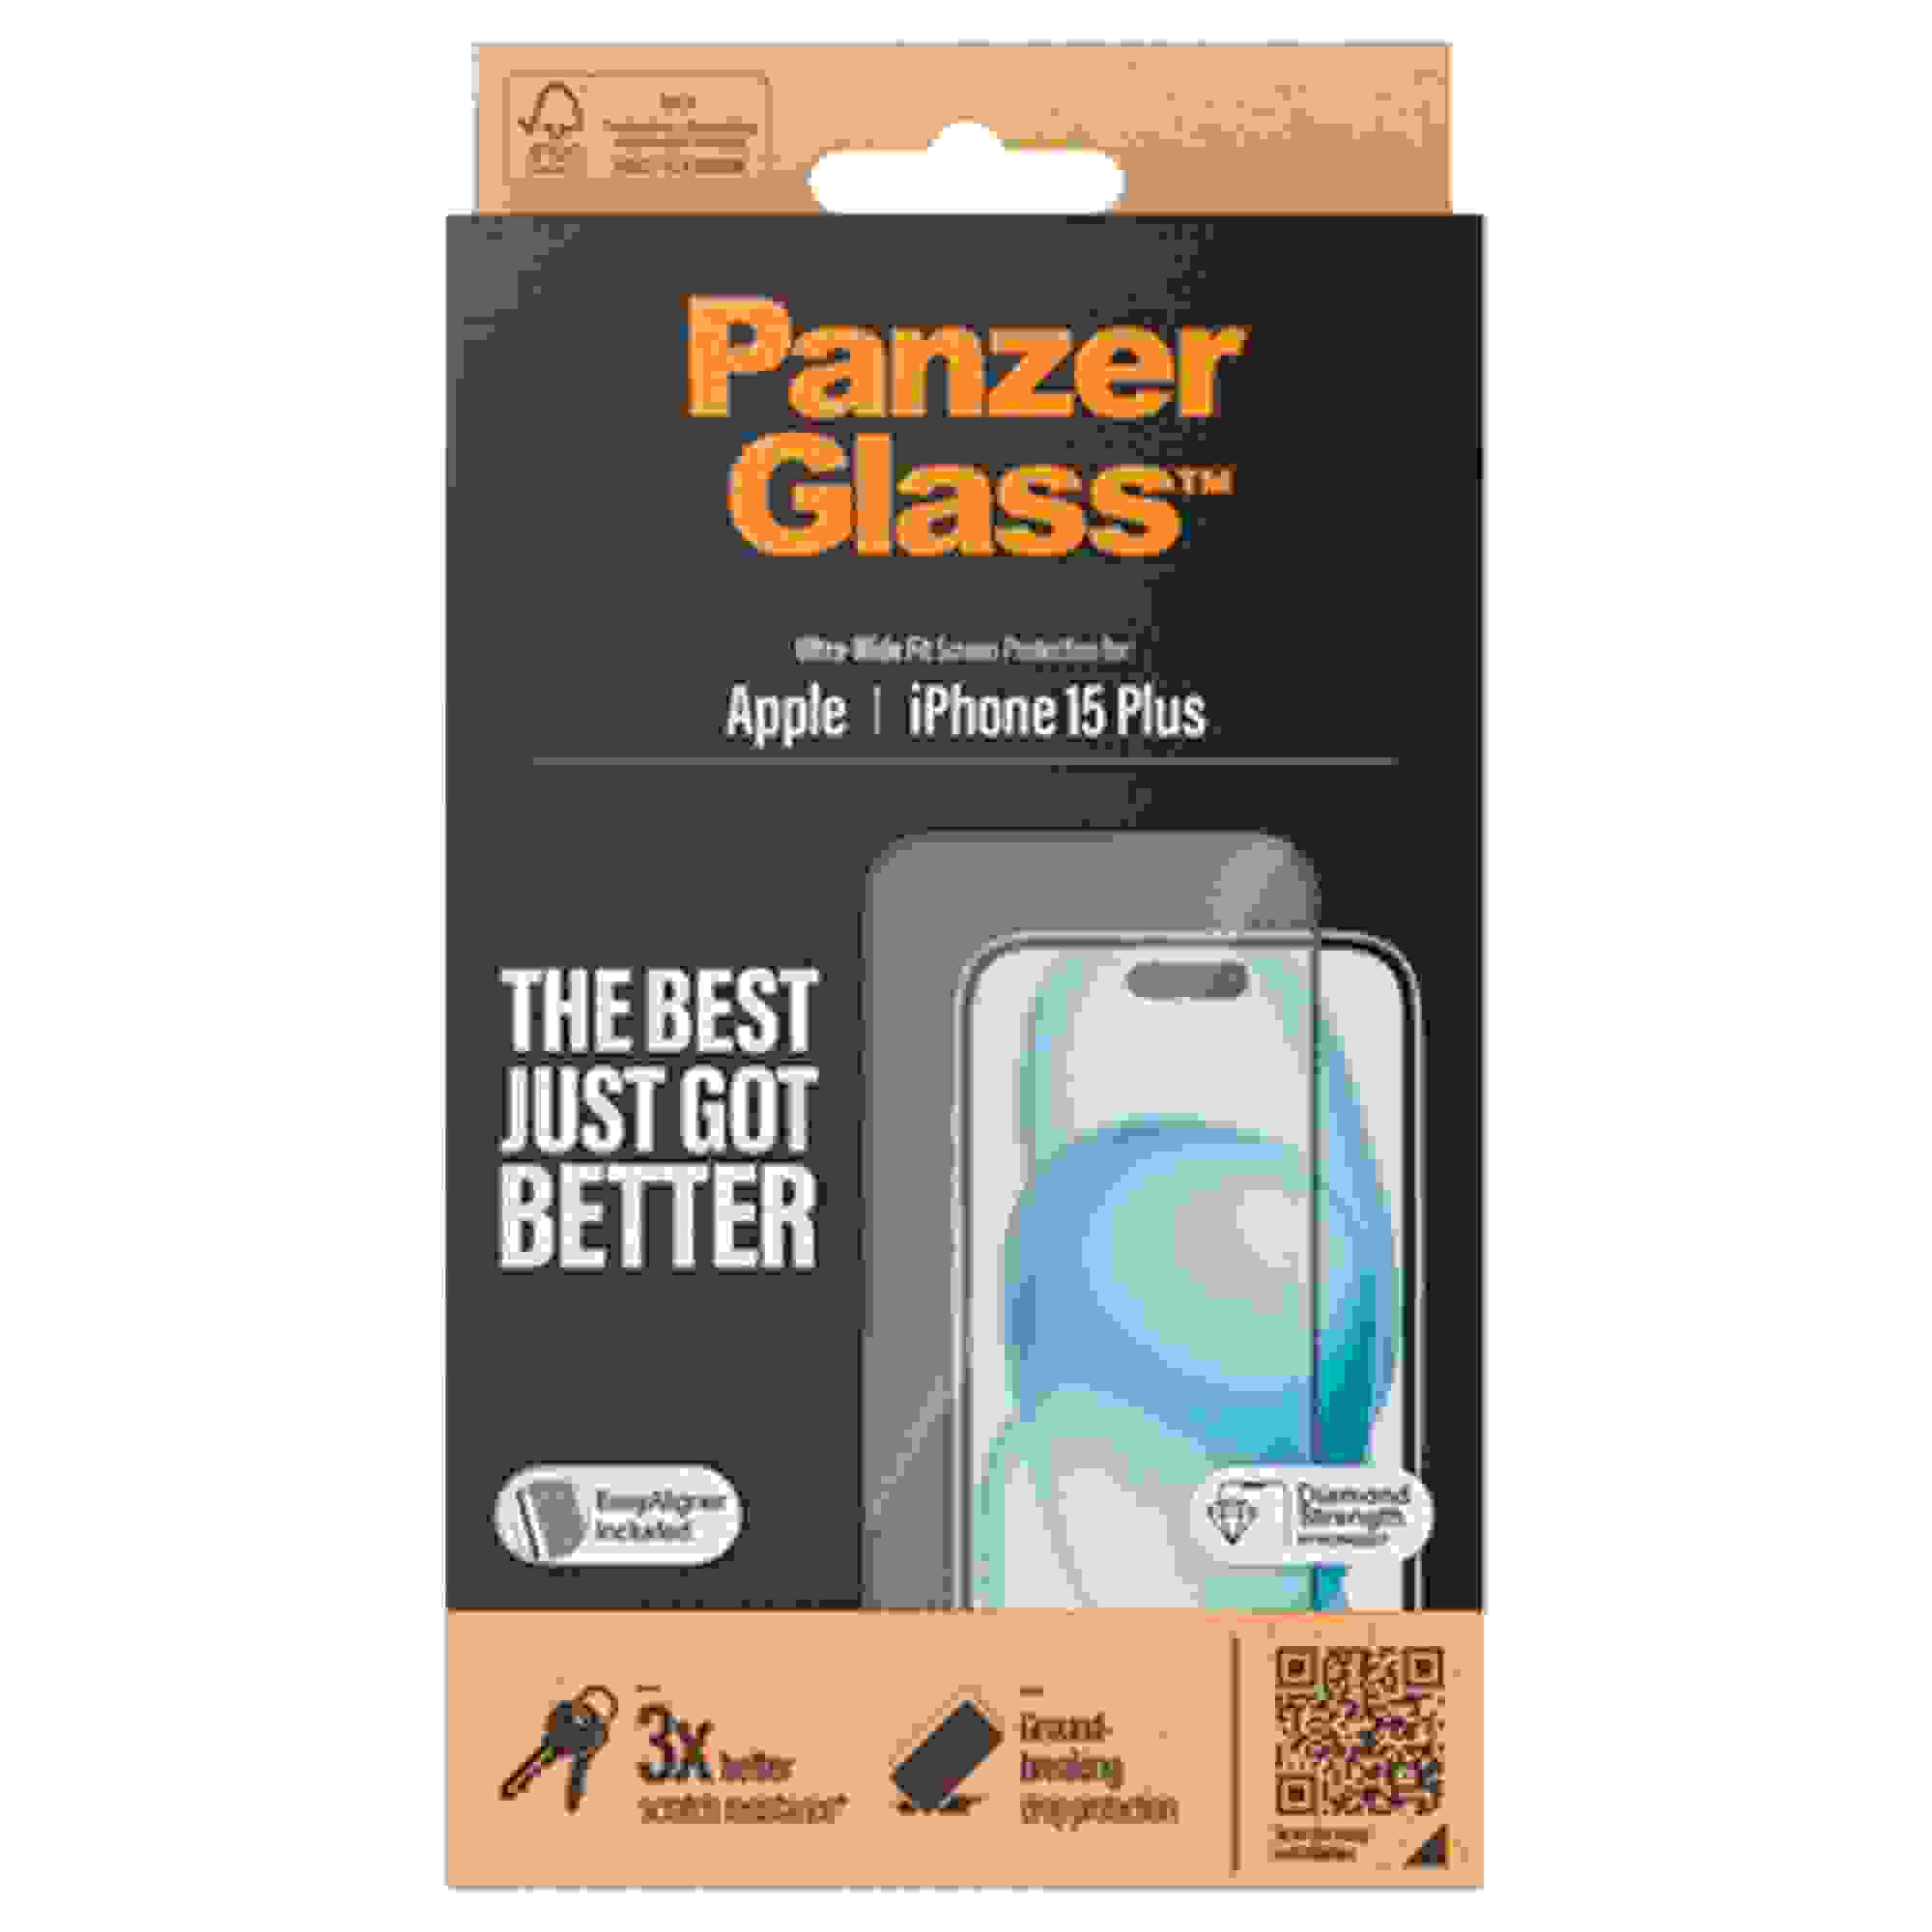 PanzerGlass iPhone 15 Plus